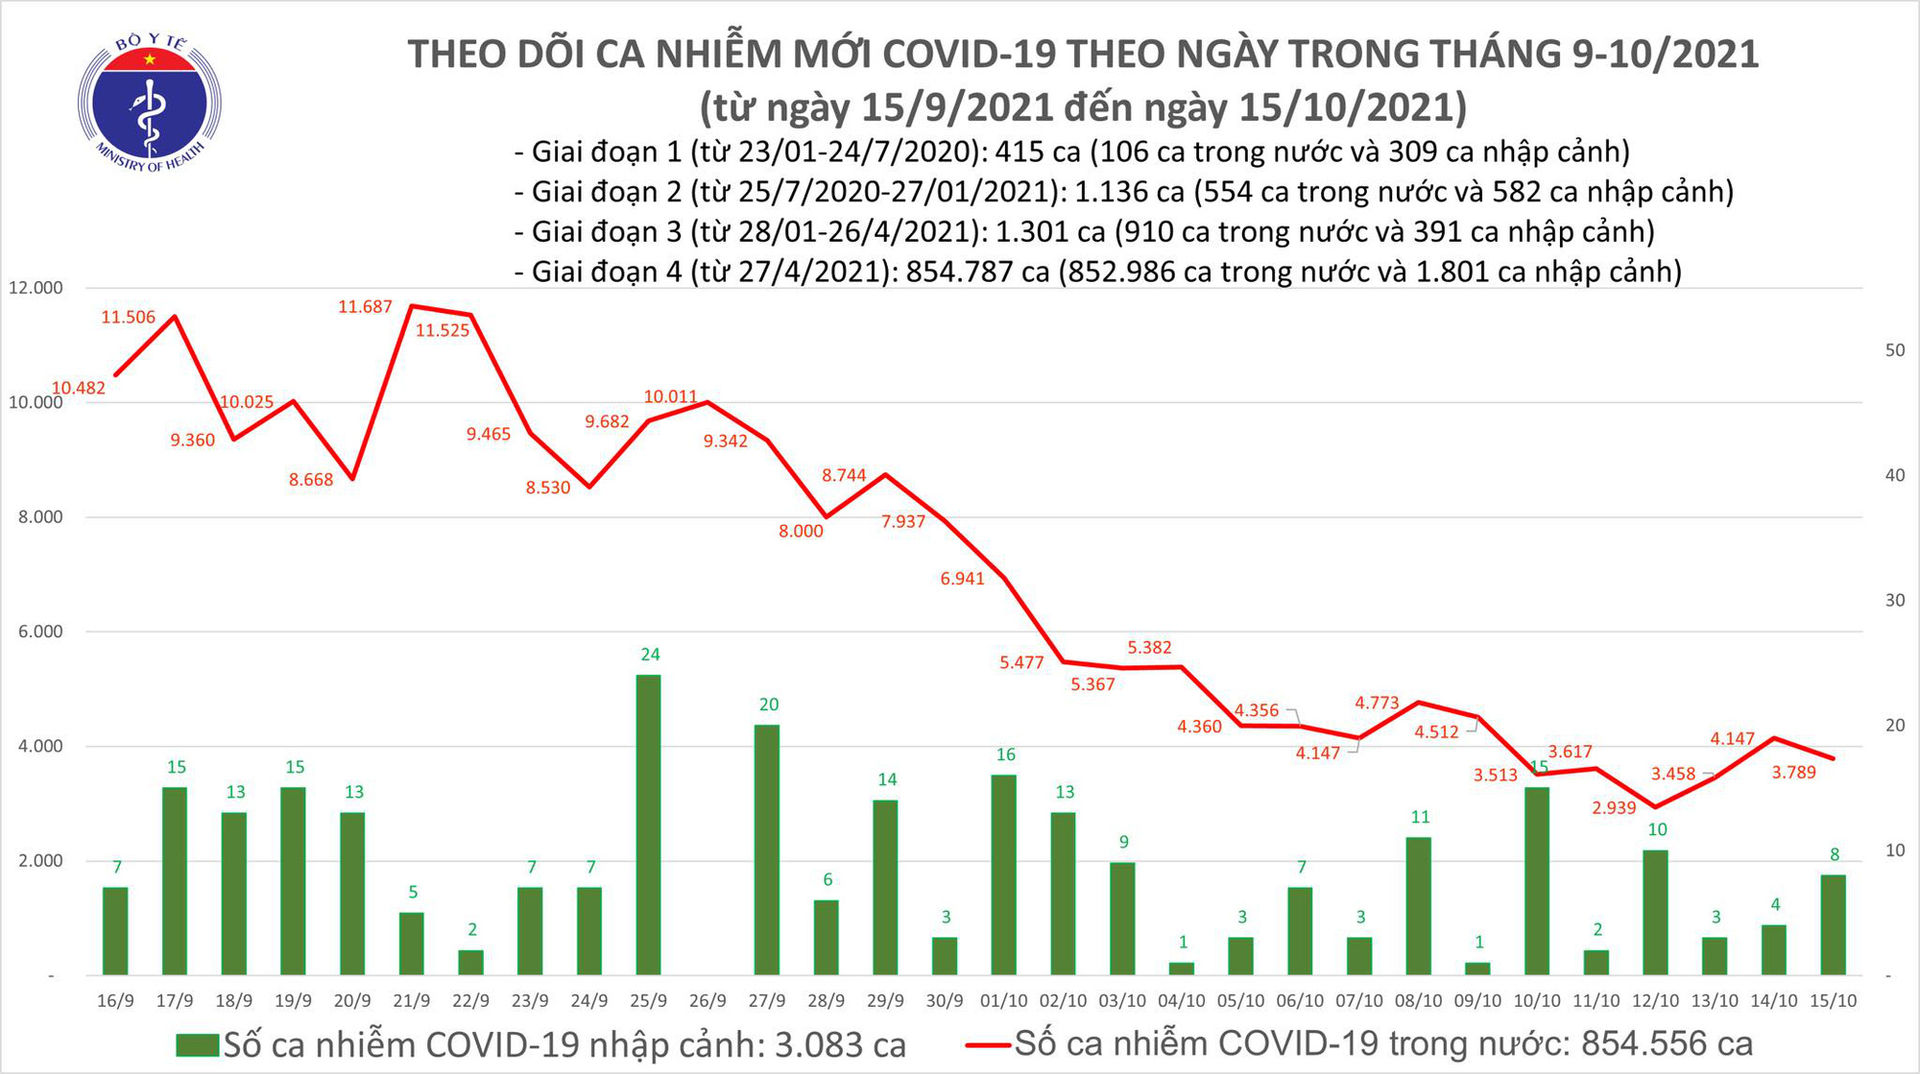 Ngày 15/10: Có 3.779 ca mắc COVID-19 tại TP HCM, Sóc Trăng và 45 địa phương khác - Ảnh 1.